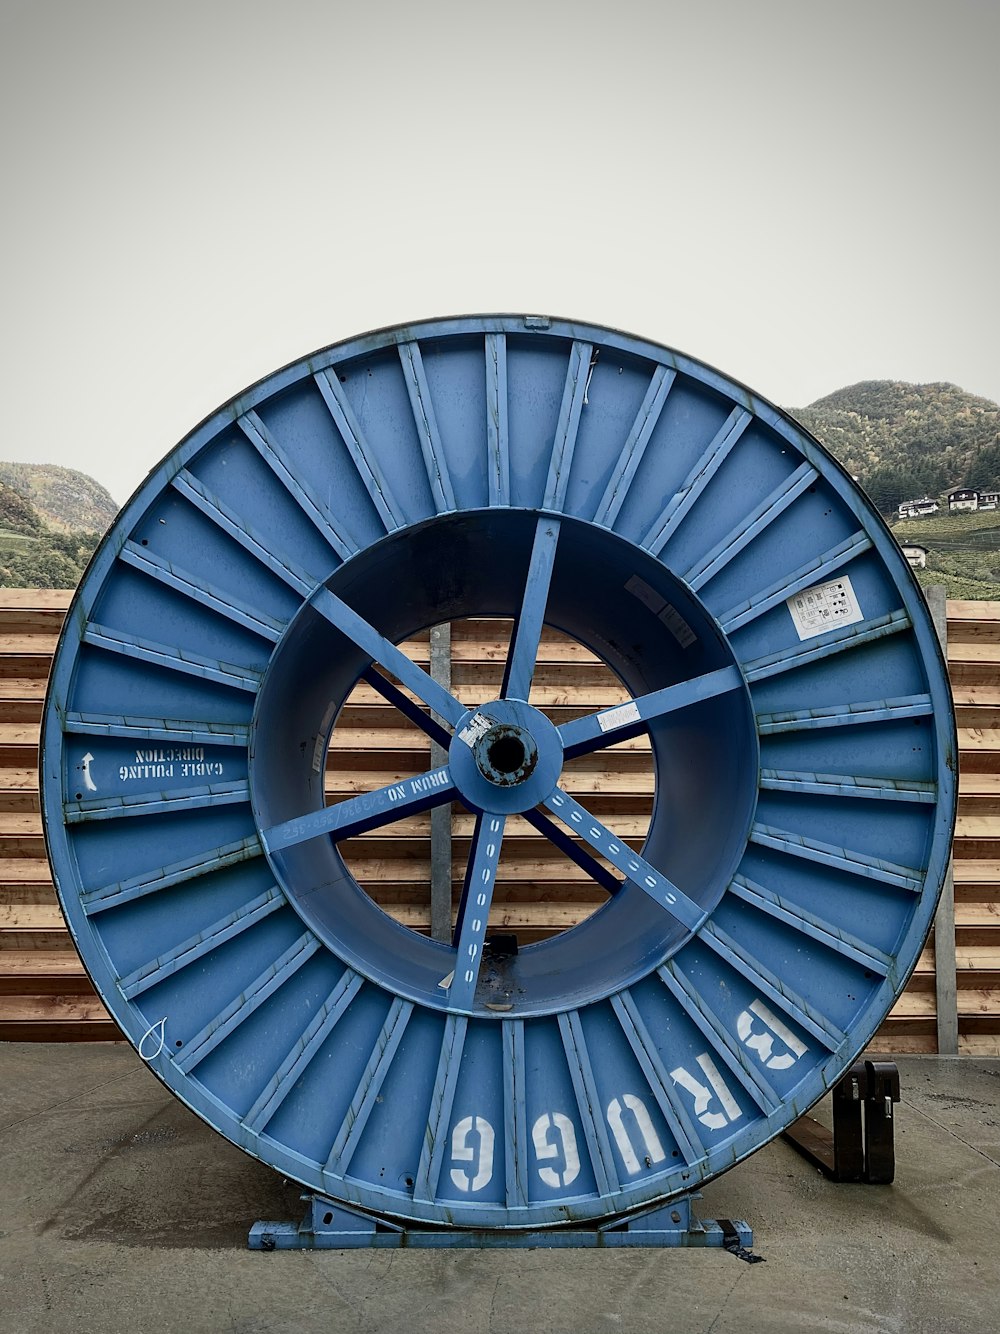 rueda redonda azul y negra en muelle de madera marrón durante el día